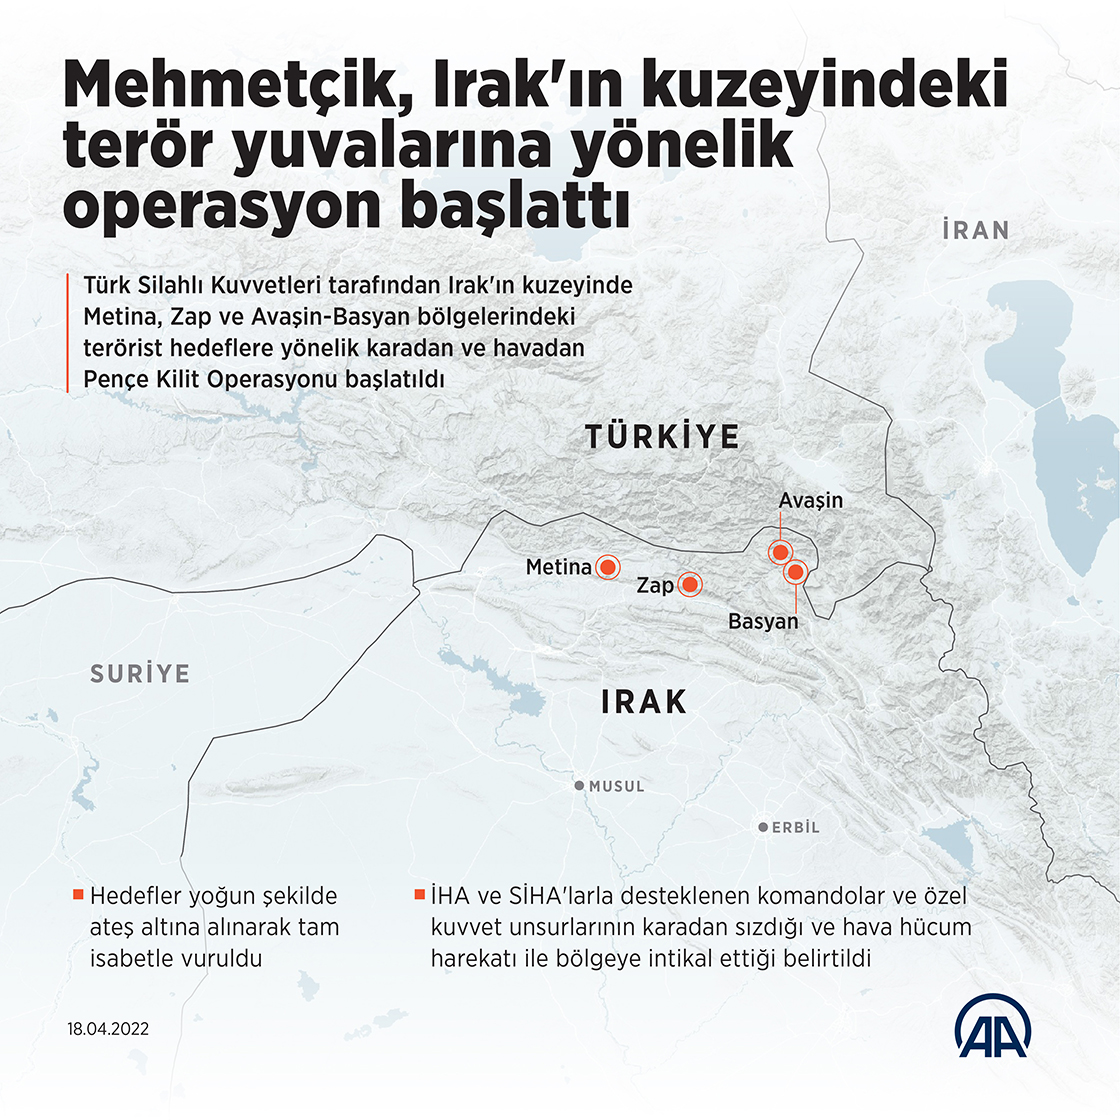 Mehmetçik, Irak'ın kuzeyindeki terör yuvalarına yönelik operasyon başlattı